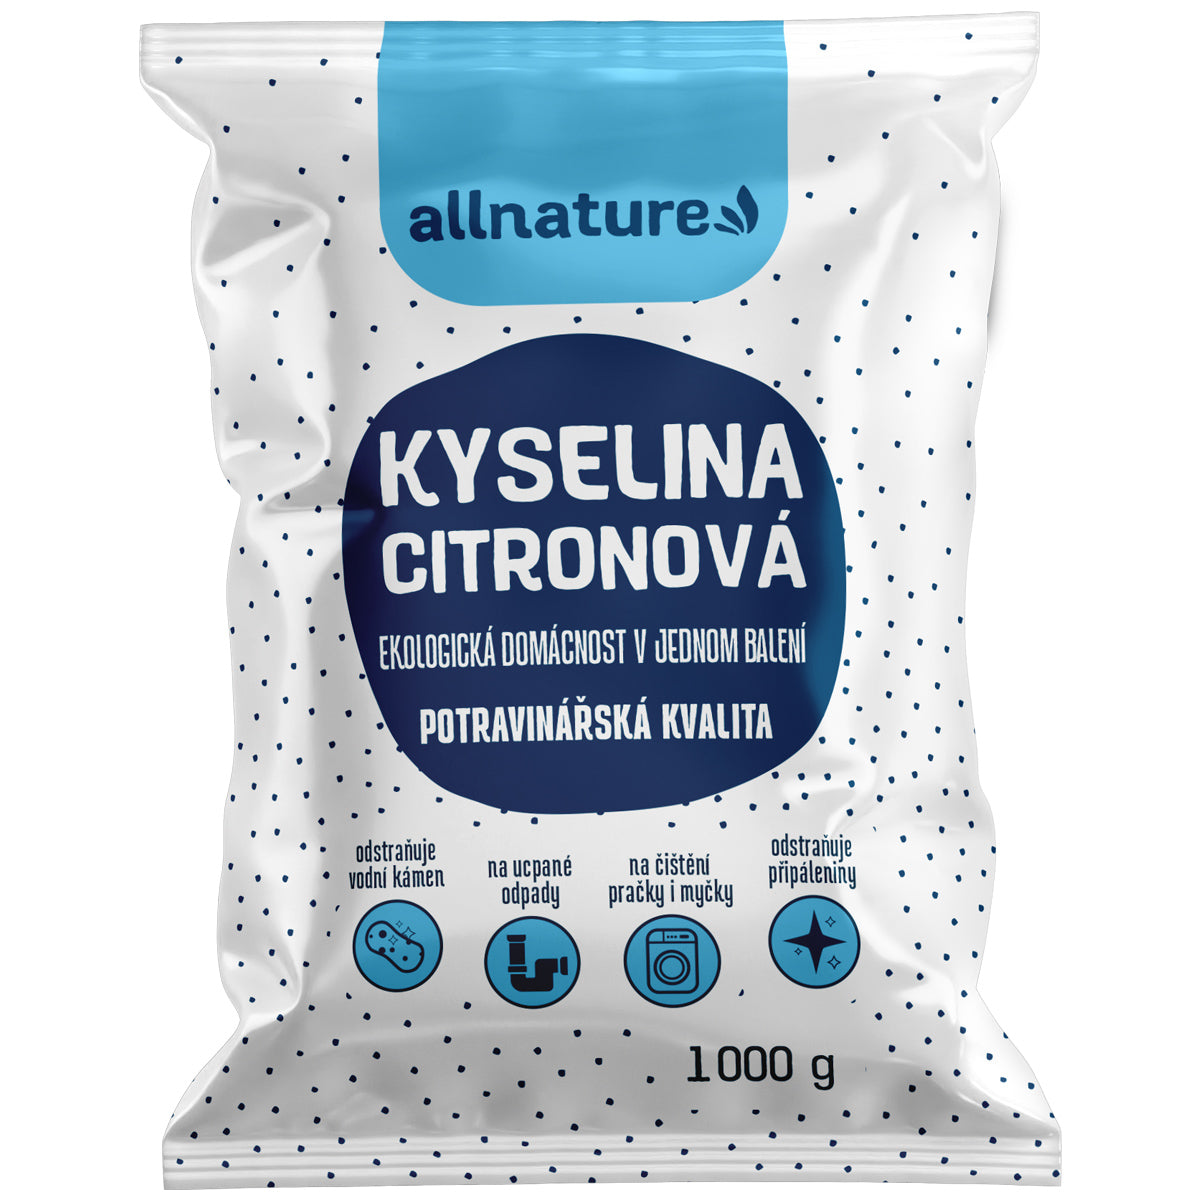 Allnature Kyselina citronová 1 kg - potravinářská kvalita Allnature